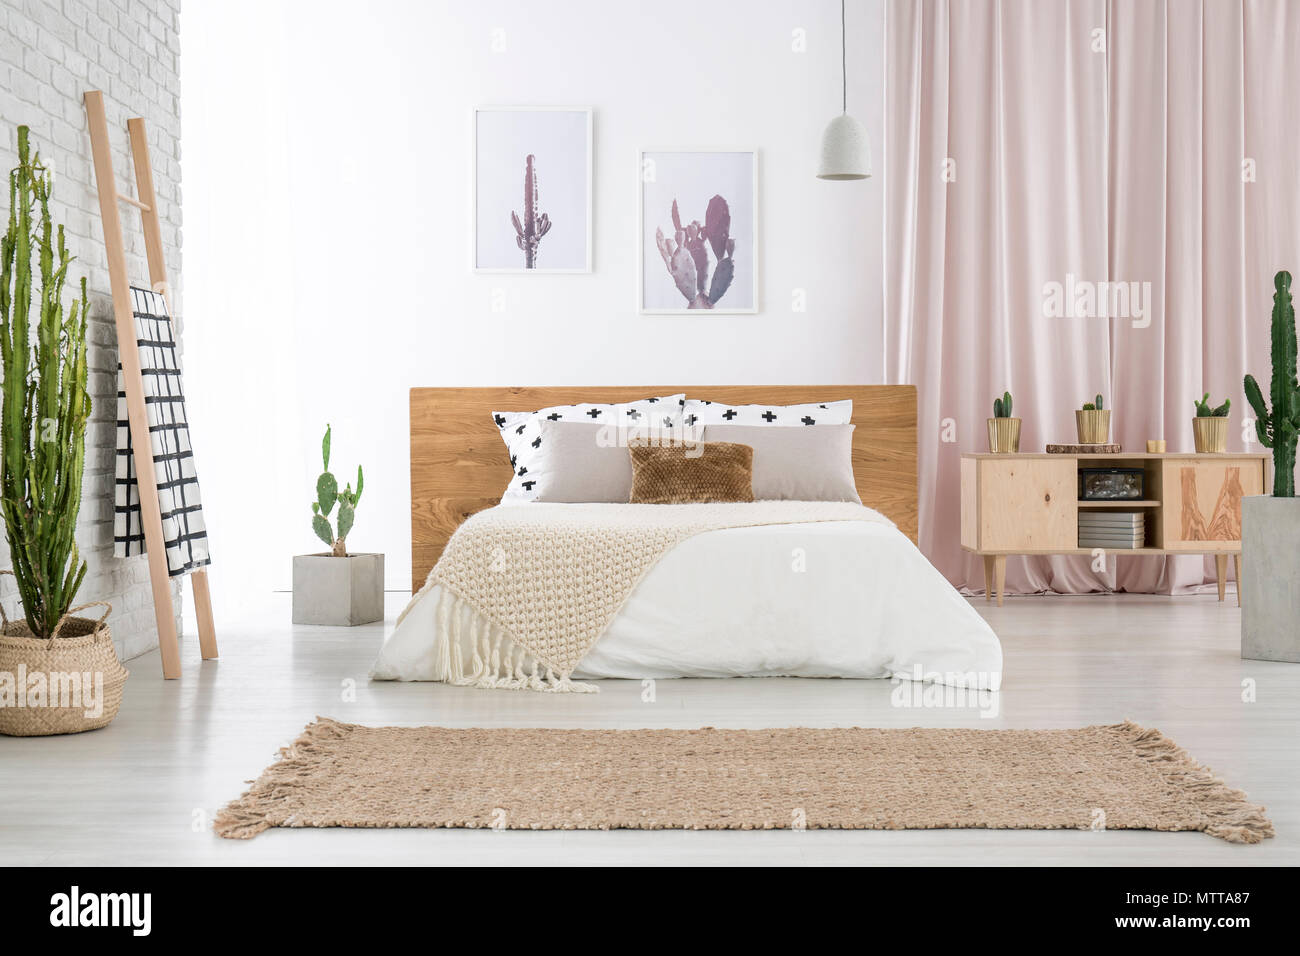 Beige Teppich vor King-size-Bett in der Nähe von Leiter und Schrank in  geräumigen Schlafzimmer mit Cactus Motiv Stockfotografie - Alamy